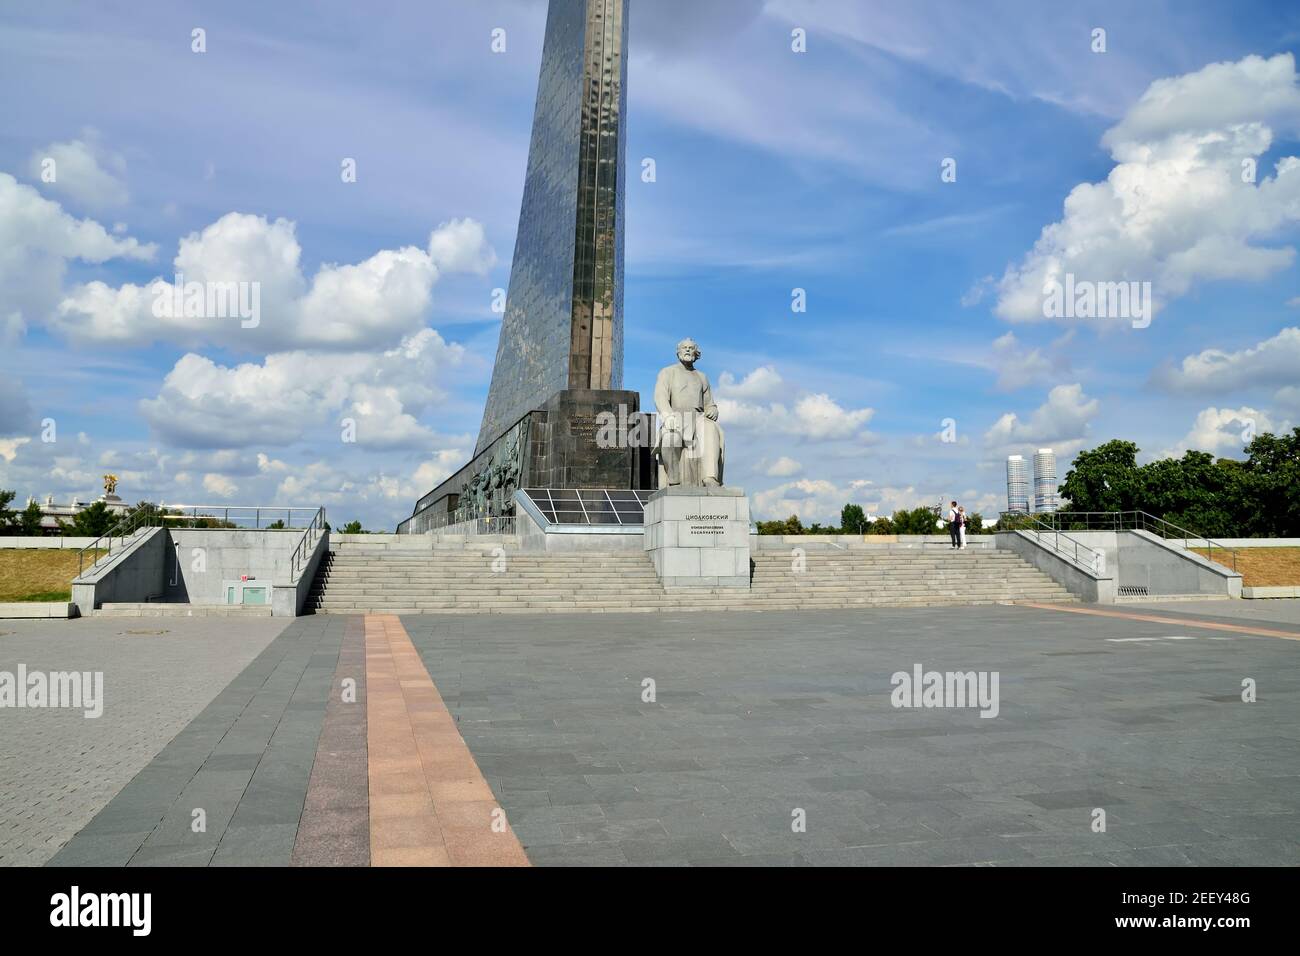 Moscou, Russie - 25 août 2020 : vue sur le monument de Konstantin Eduardovich Tsiolkovsky, fondateur du cosmonautics, dans le musée de la Cosmonautics. Banque D'Images